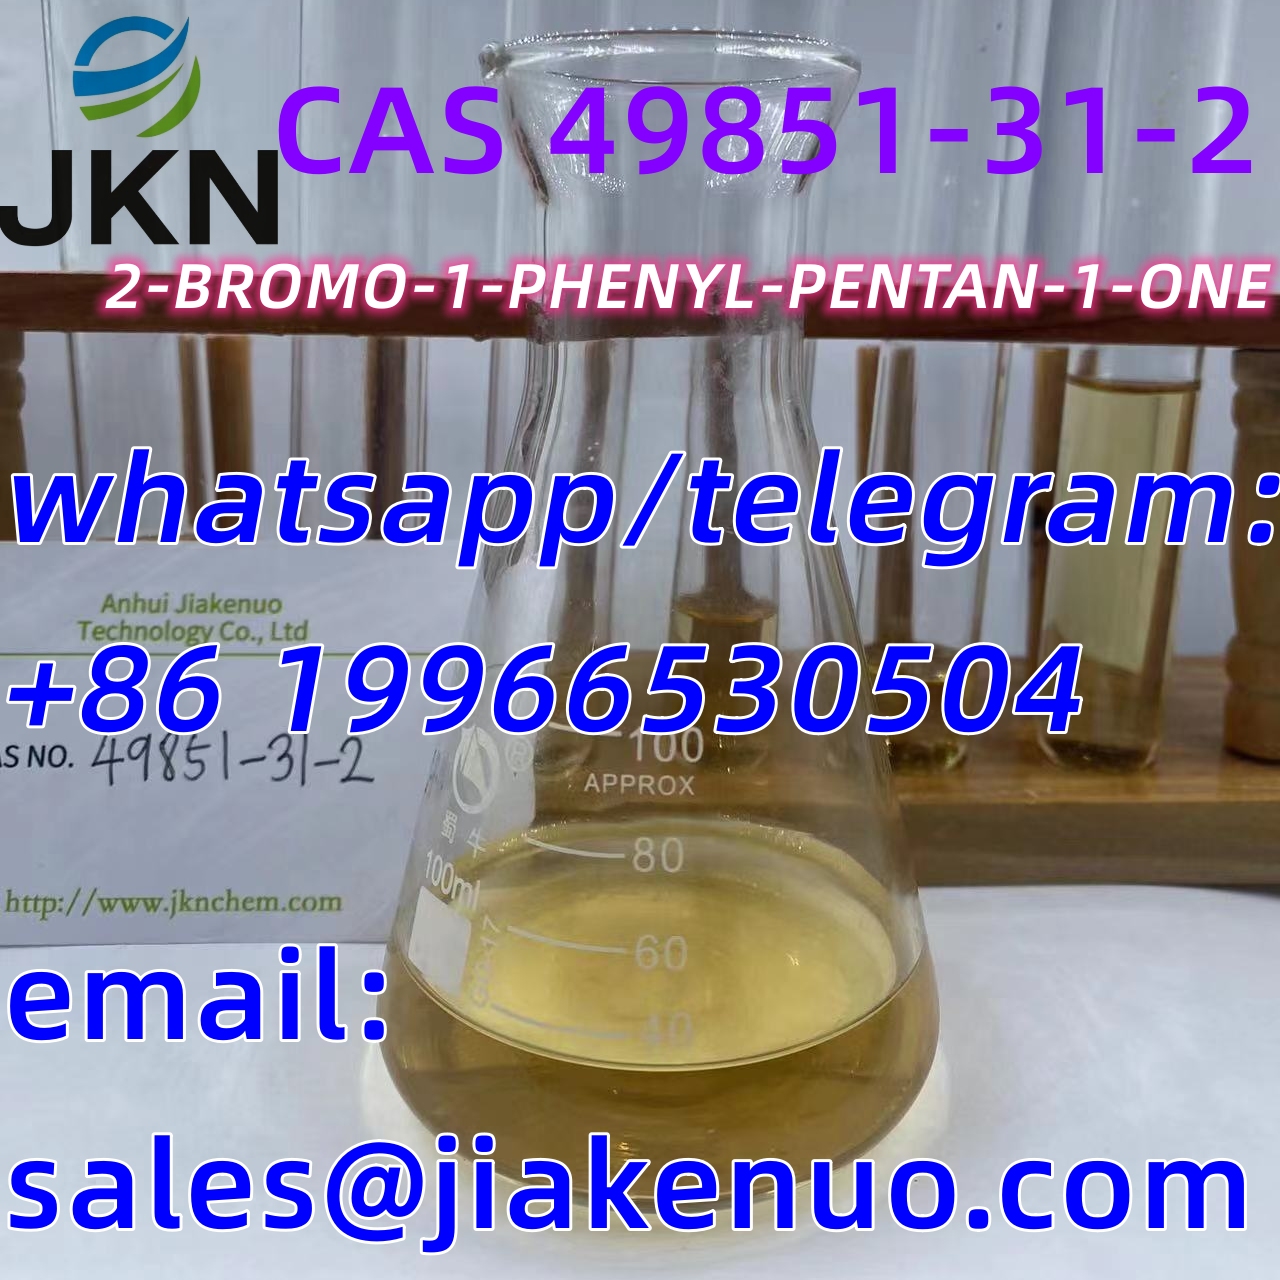 CAS 49851-31-2/2-BROMO-1-PHENYL-PENTAN-1-ONE